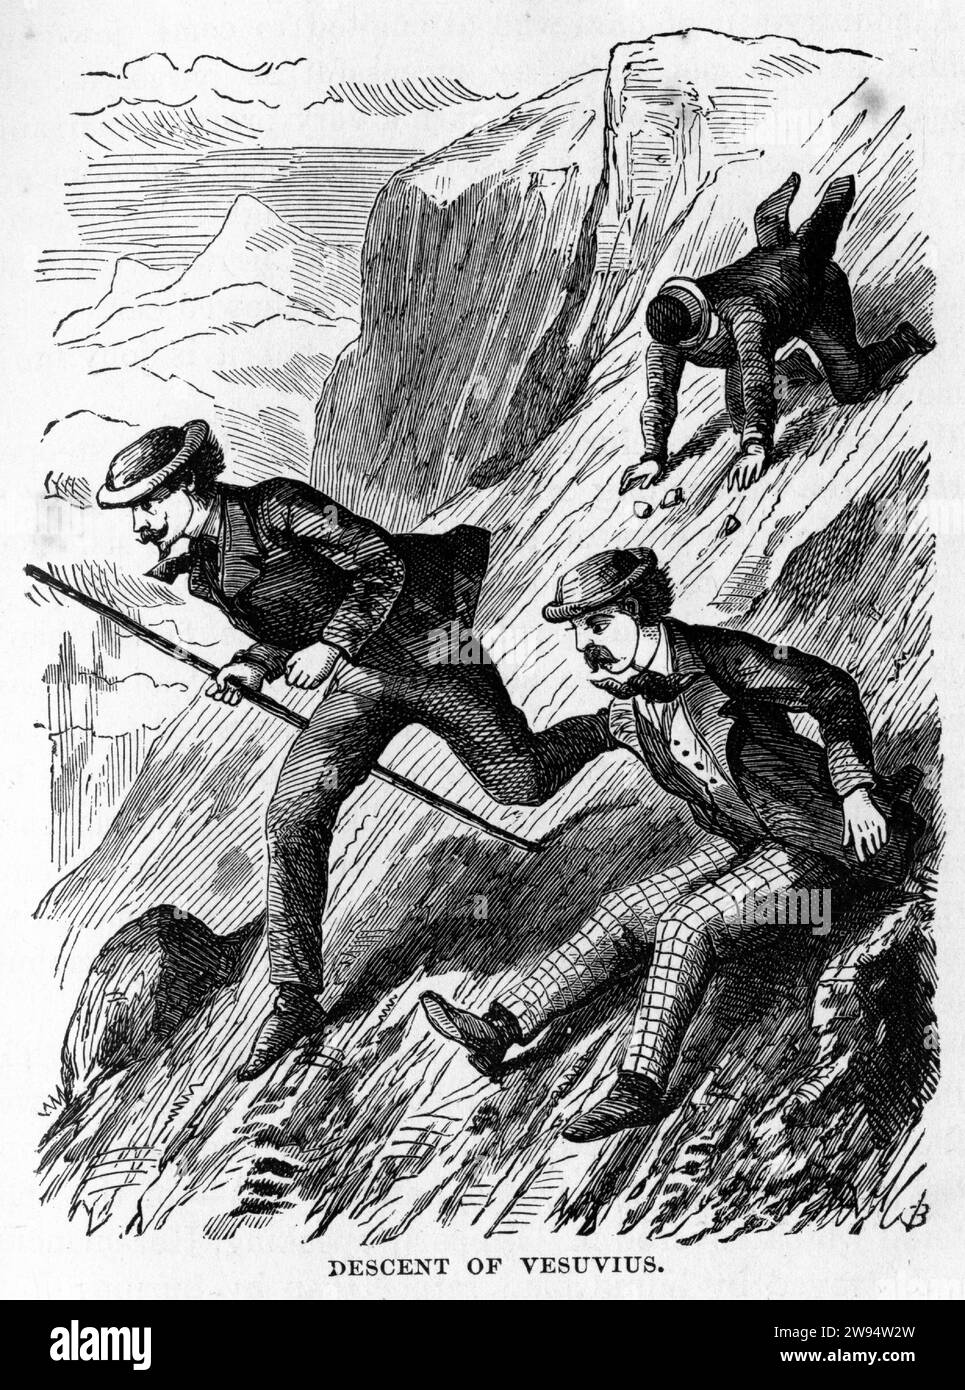 Gravure d'explorateurs descendant dans le cratère du Vésuve, du monde souterrain, vers 1878 Banque D'Images